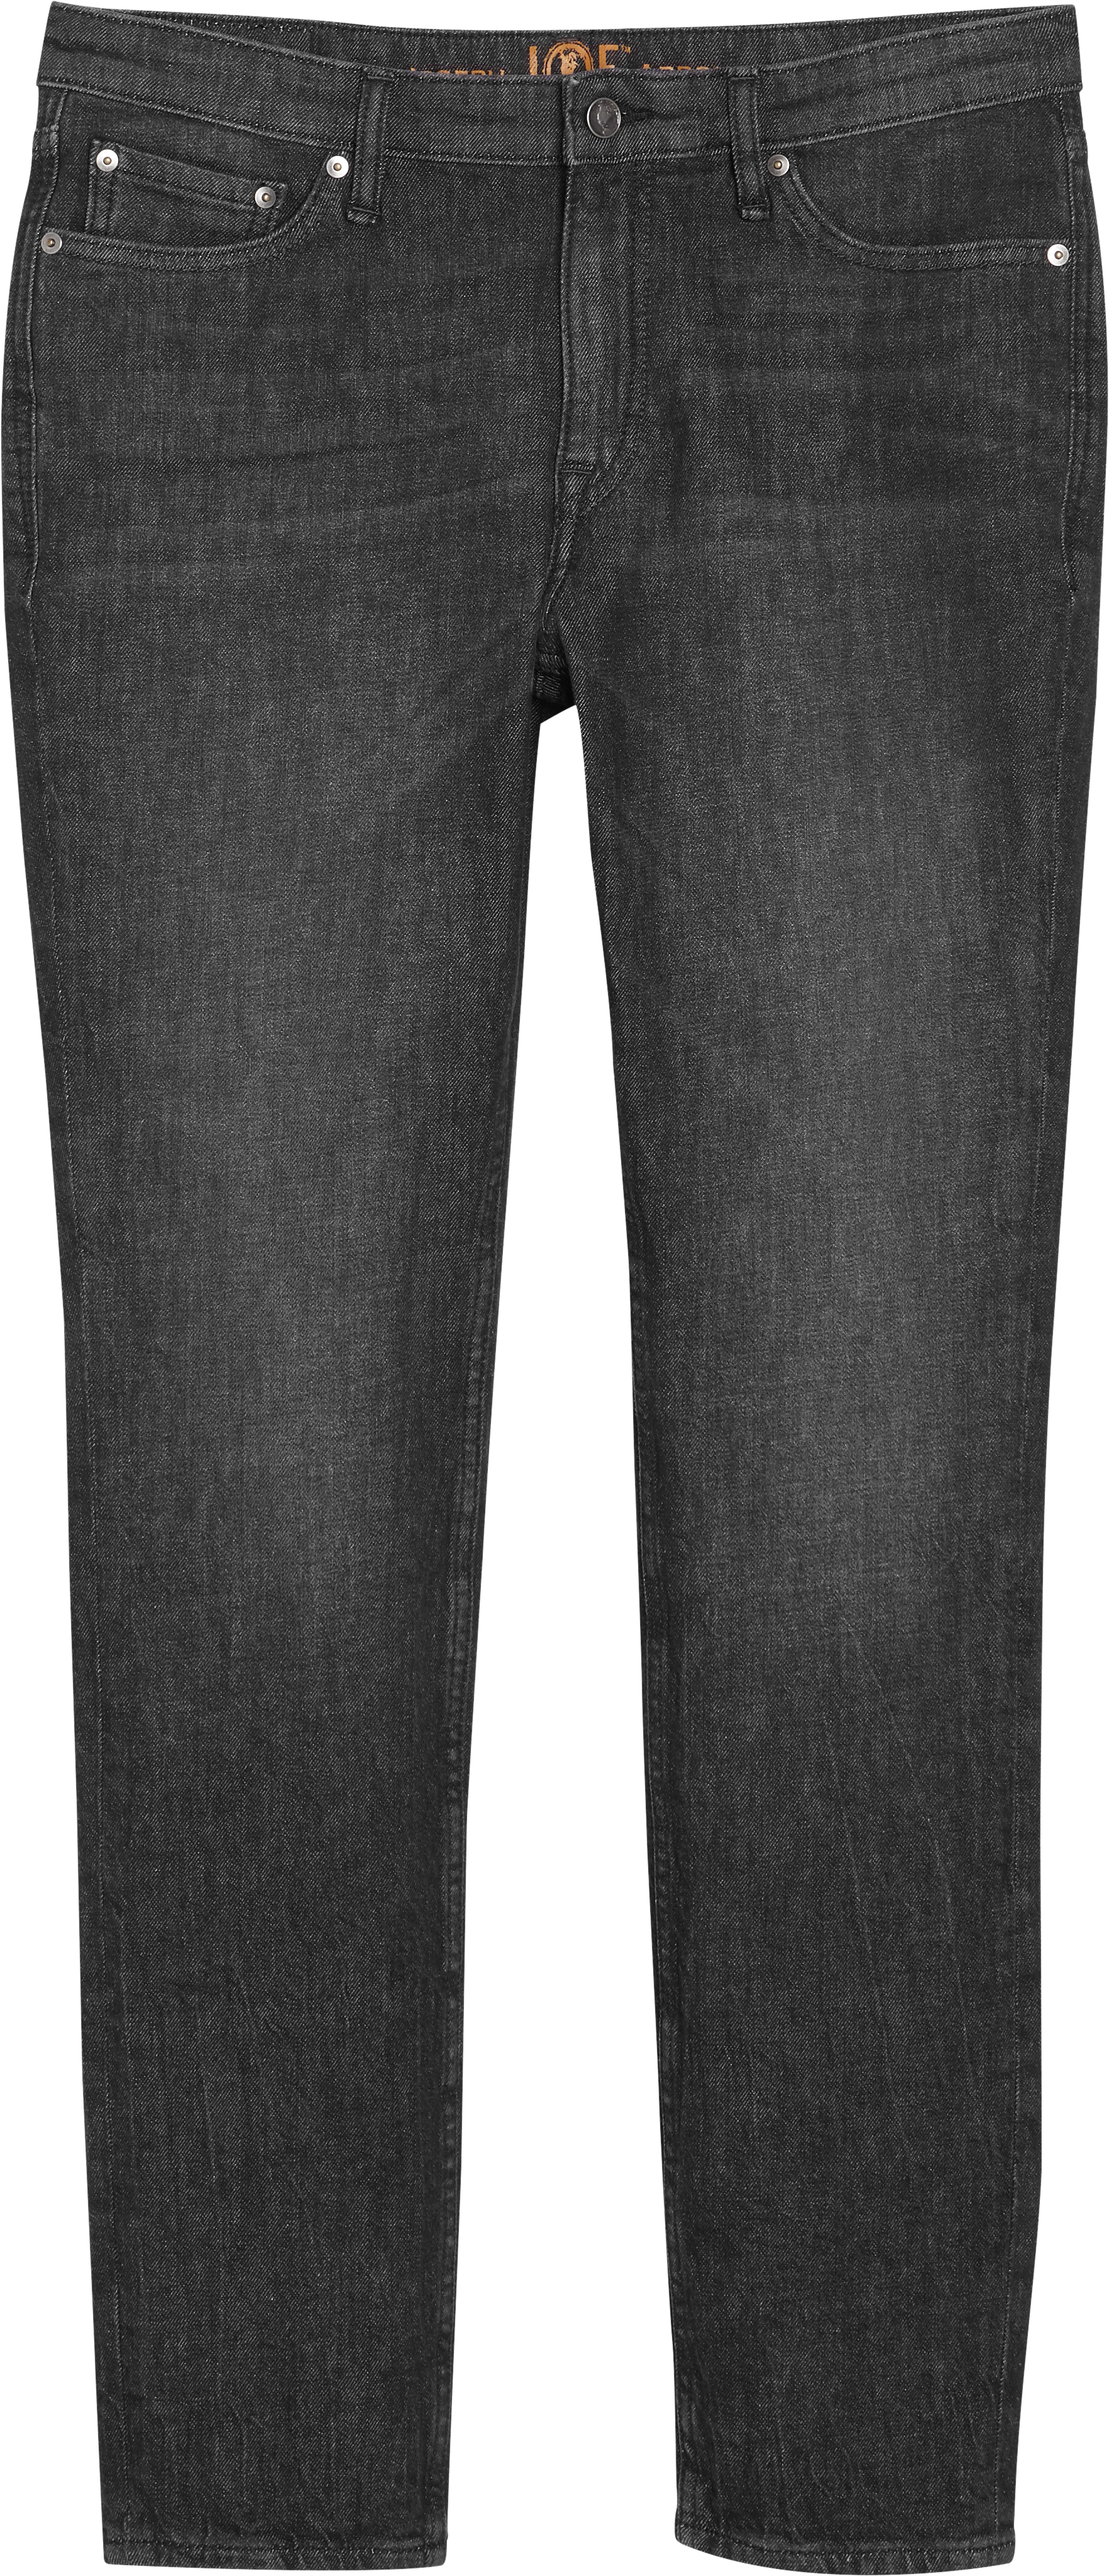 JOE Joseph Abboud Miyako Charcoal Skinny Fit Jeans - Men's Pants | Men ...